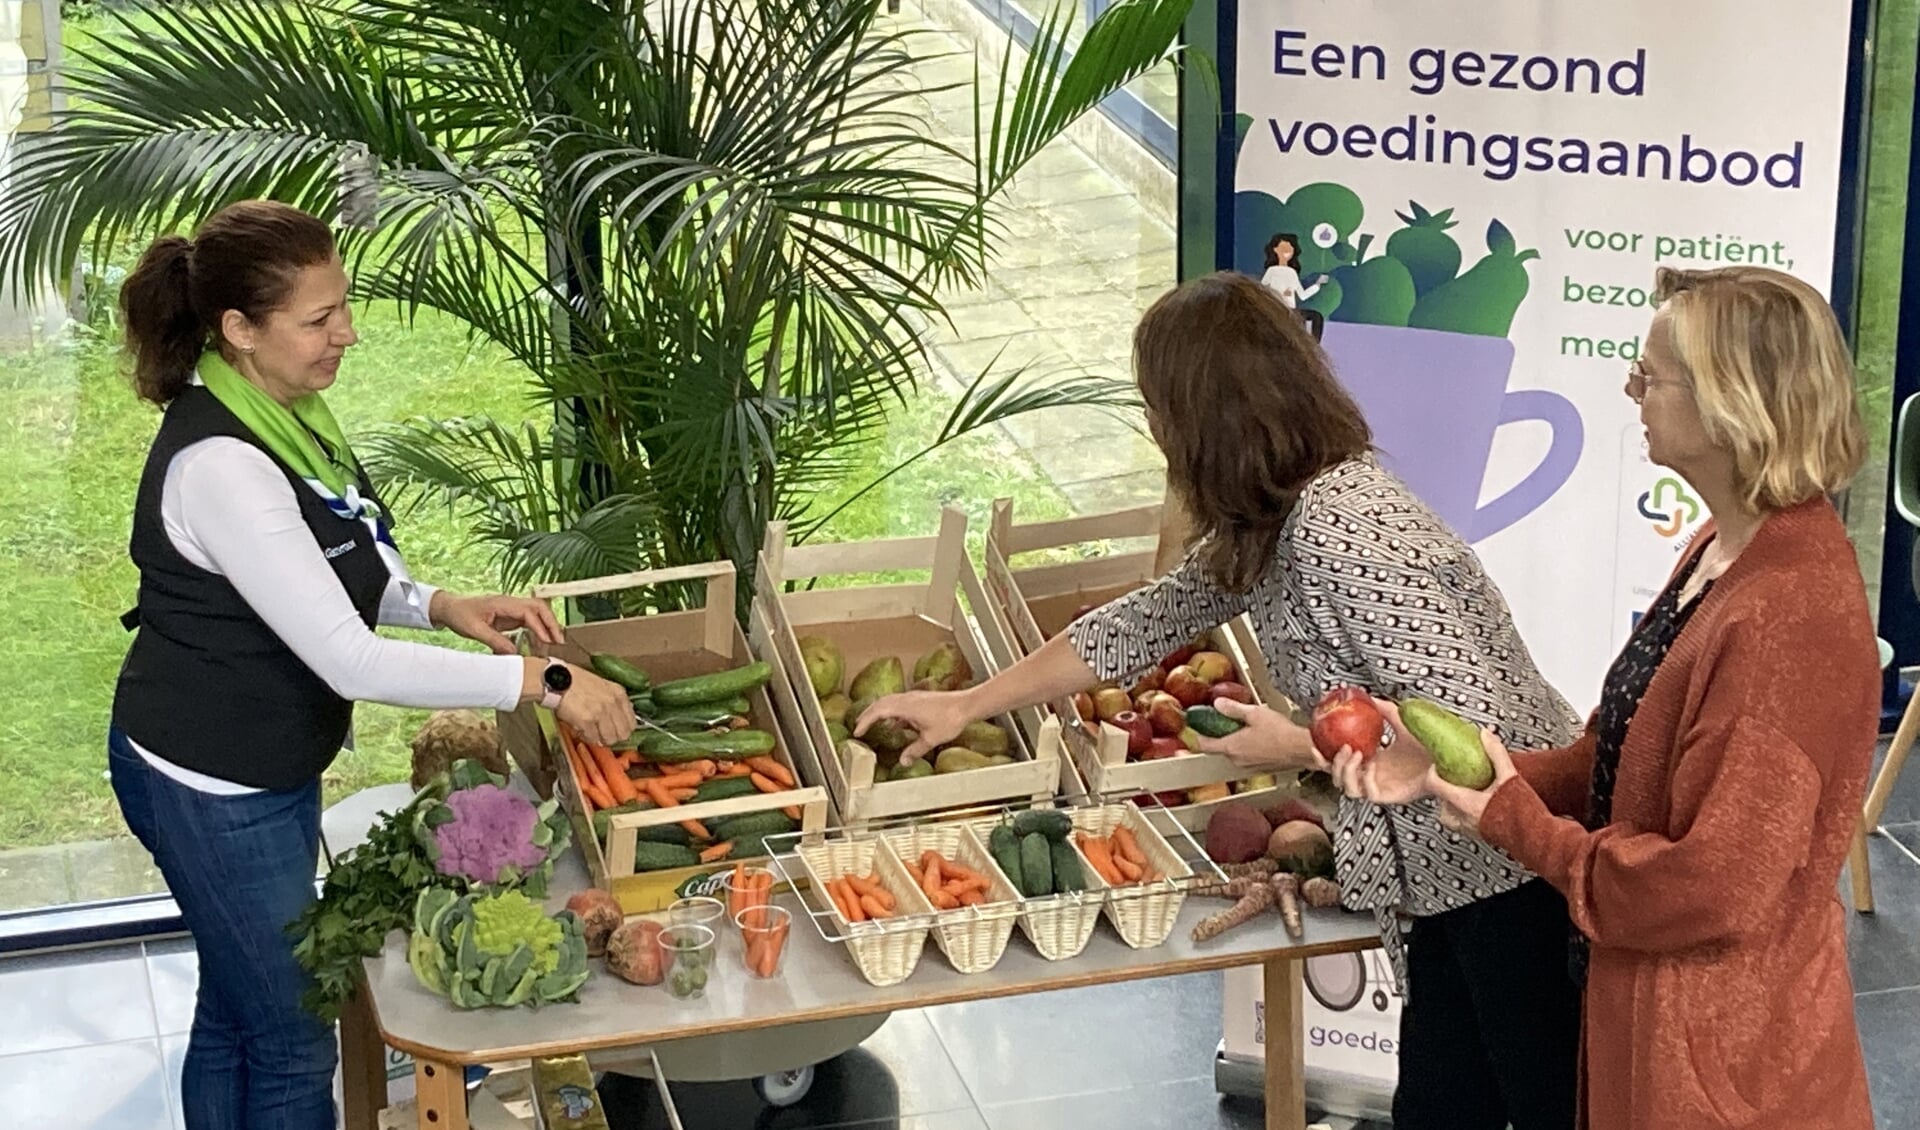 Een gastvrouw van het Dijklander Ziekenhuis in Purmerend deelt groente en fruit uit aan patiënten en medewerkers